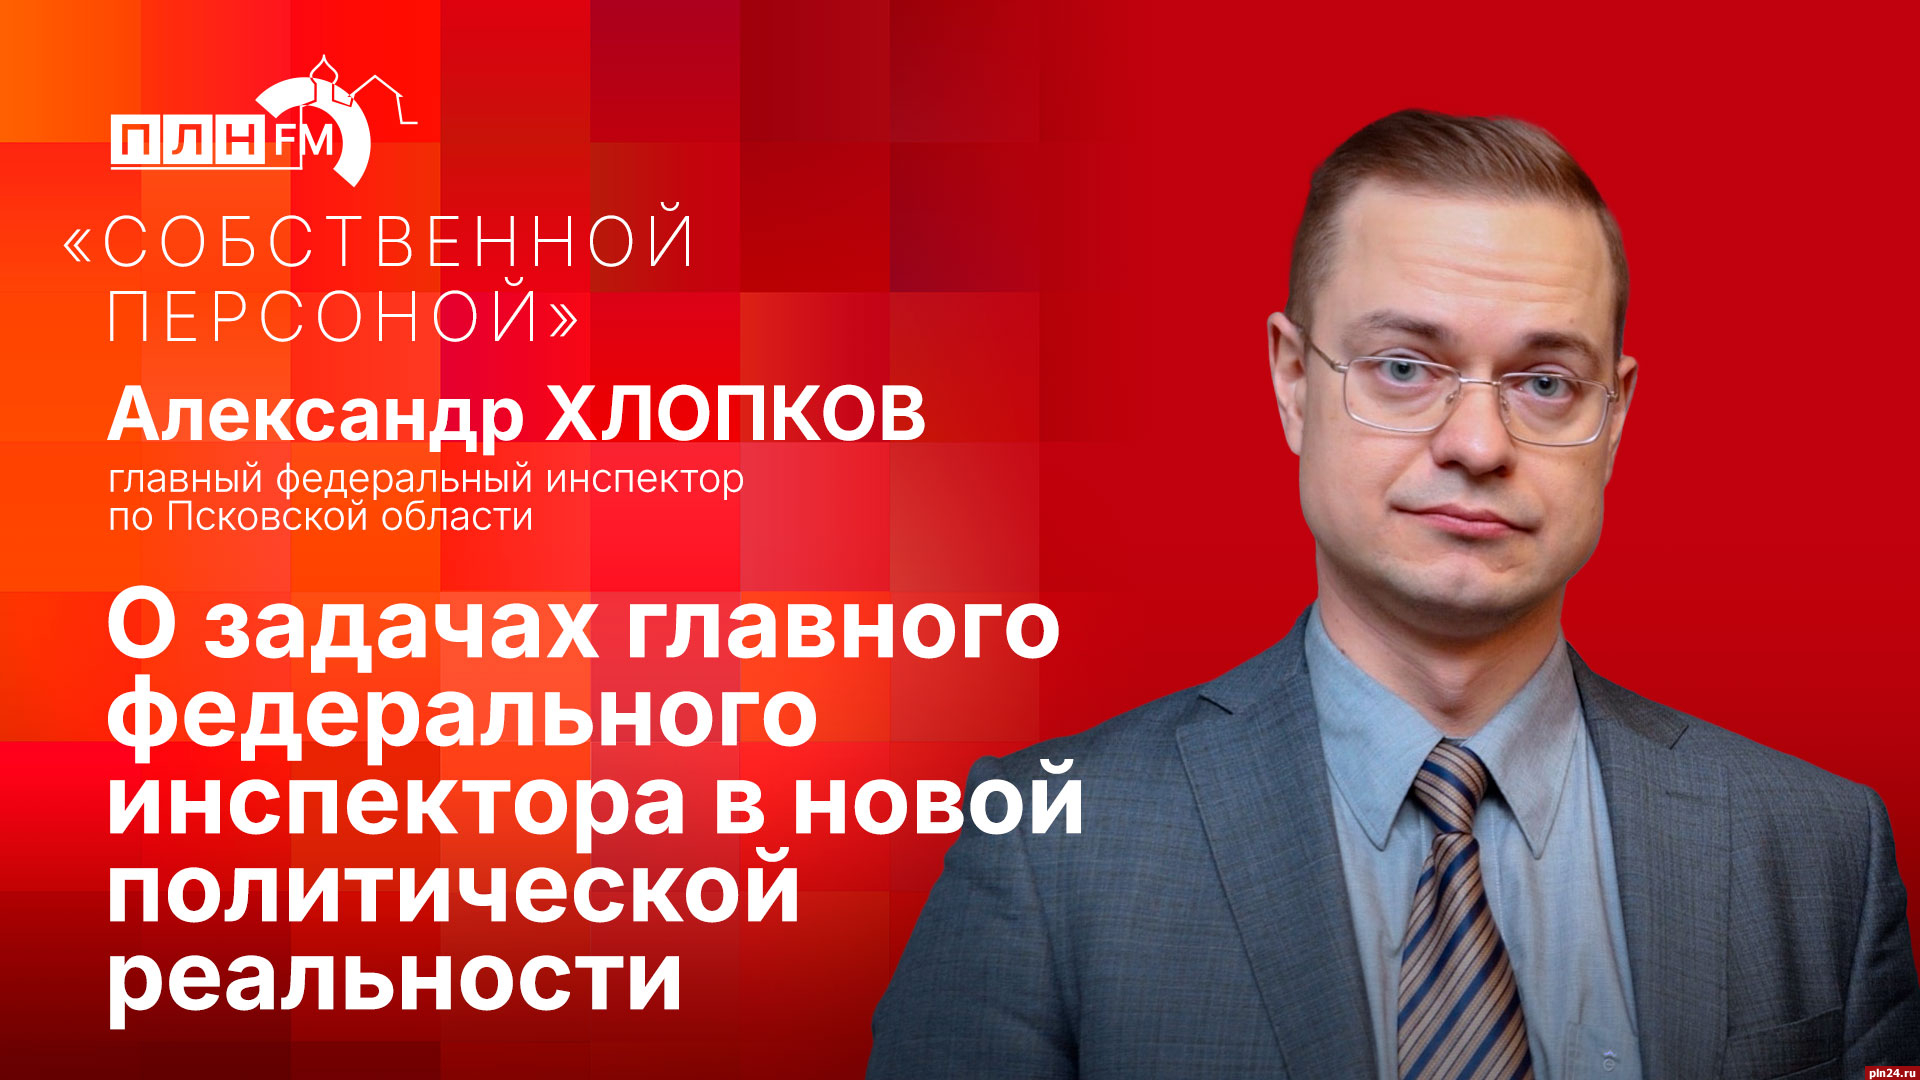 Начинается видеотрансляция программы «Собственной персоной» с главным федеральным инспектором по Псковской области